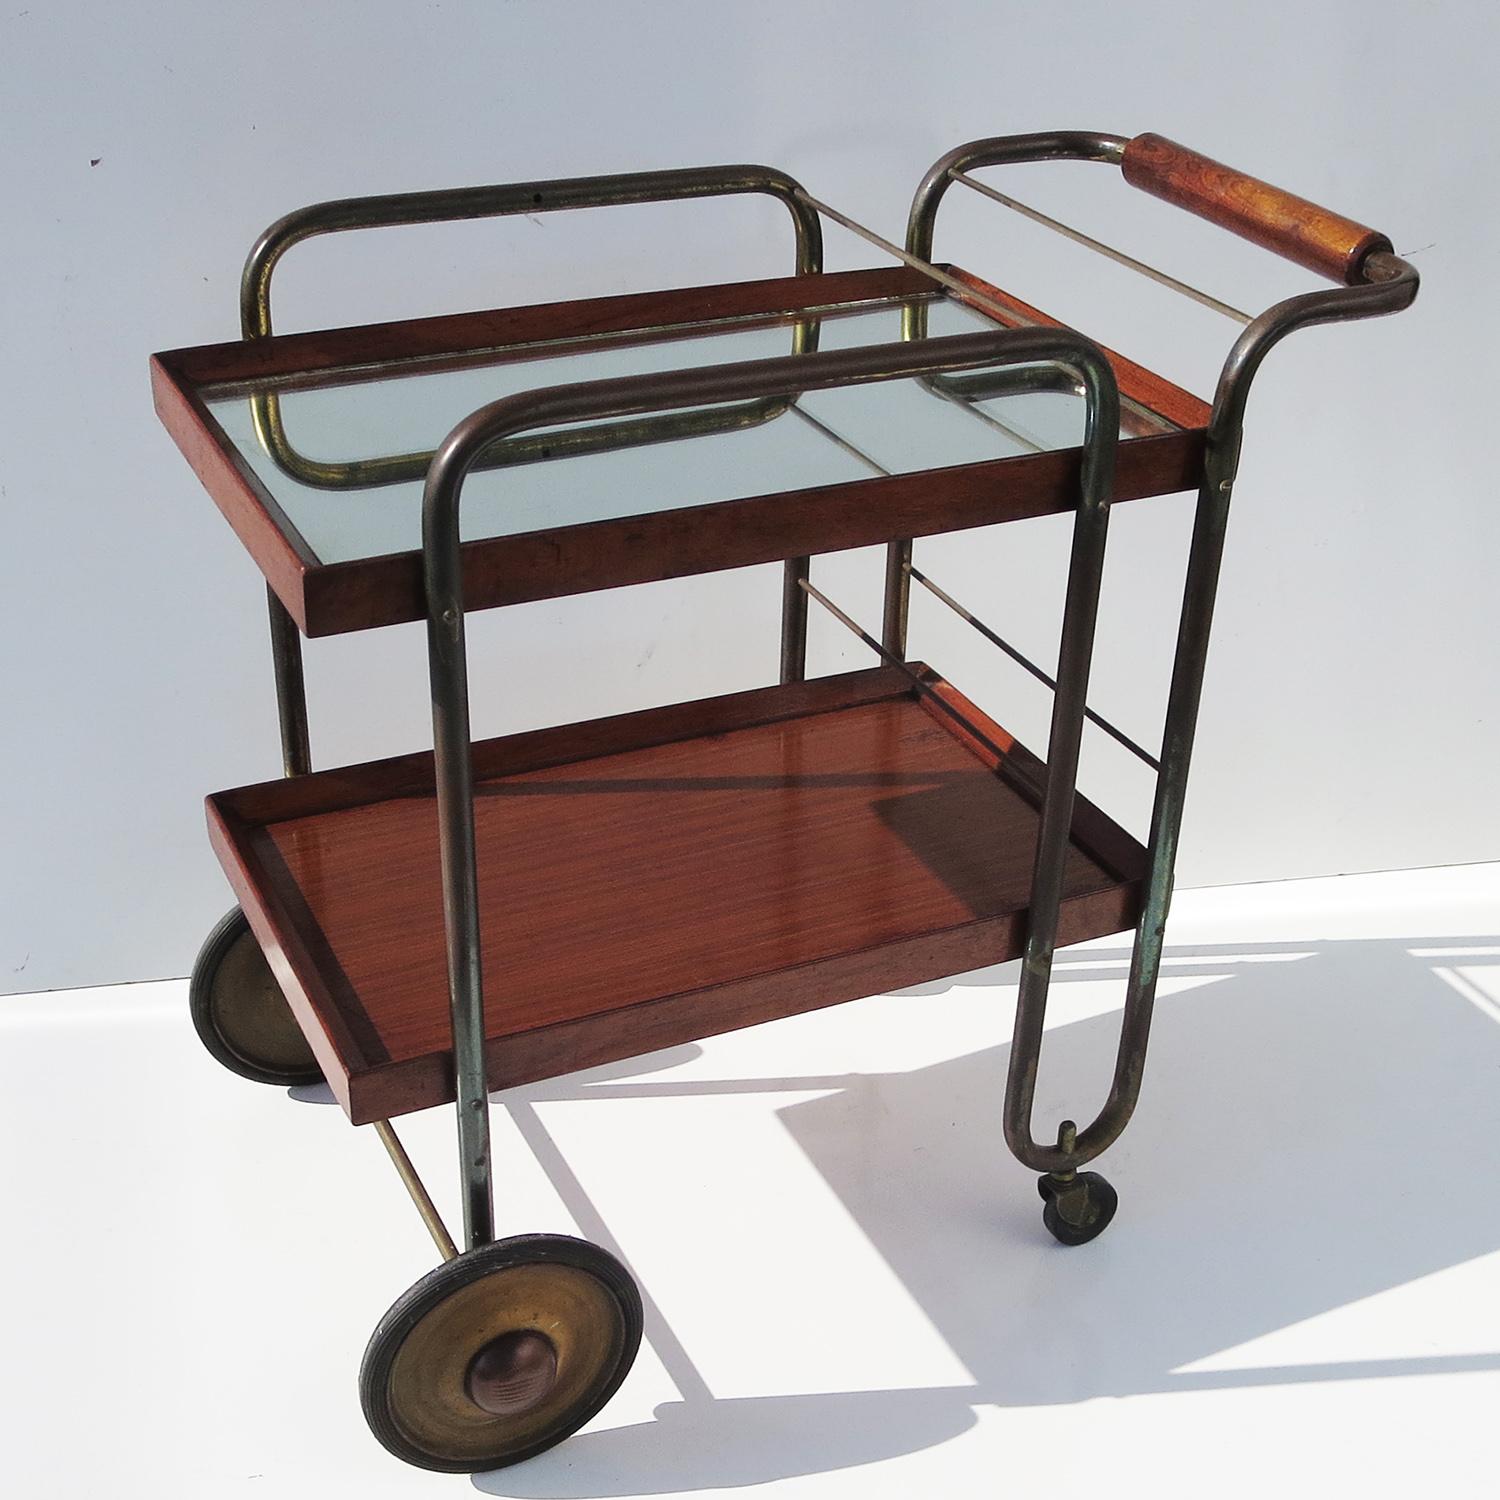 American Art Deco Cocktail Cart by Treitel-Gratz